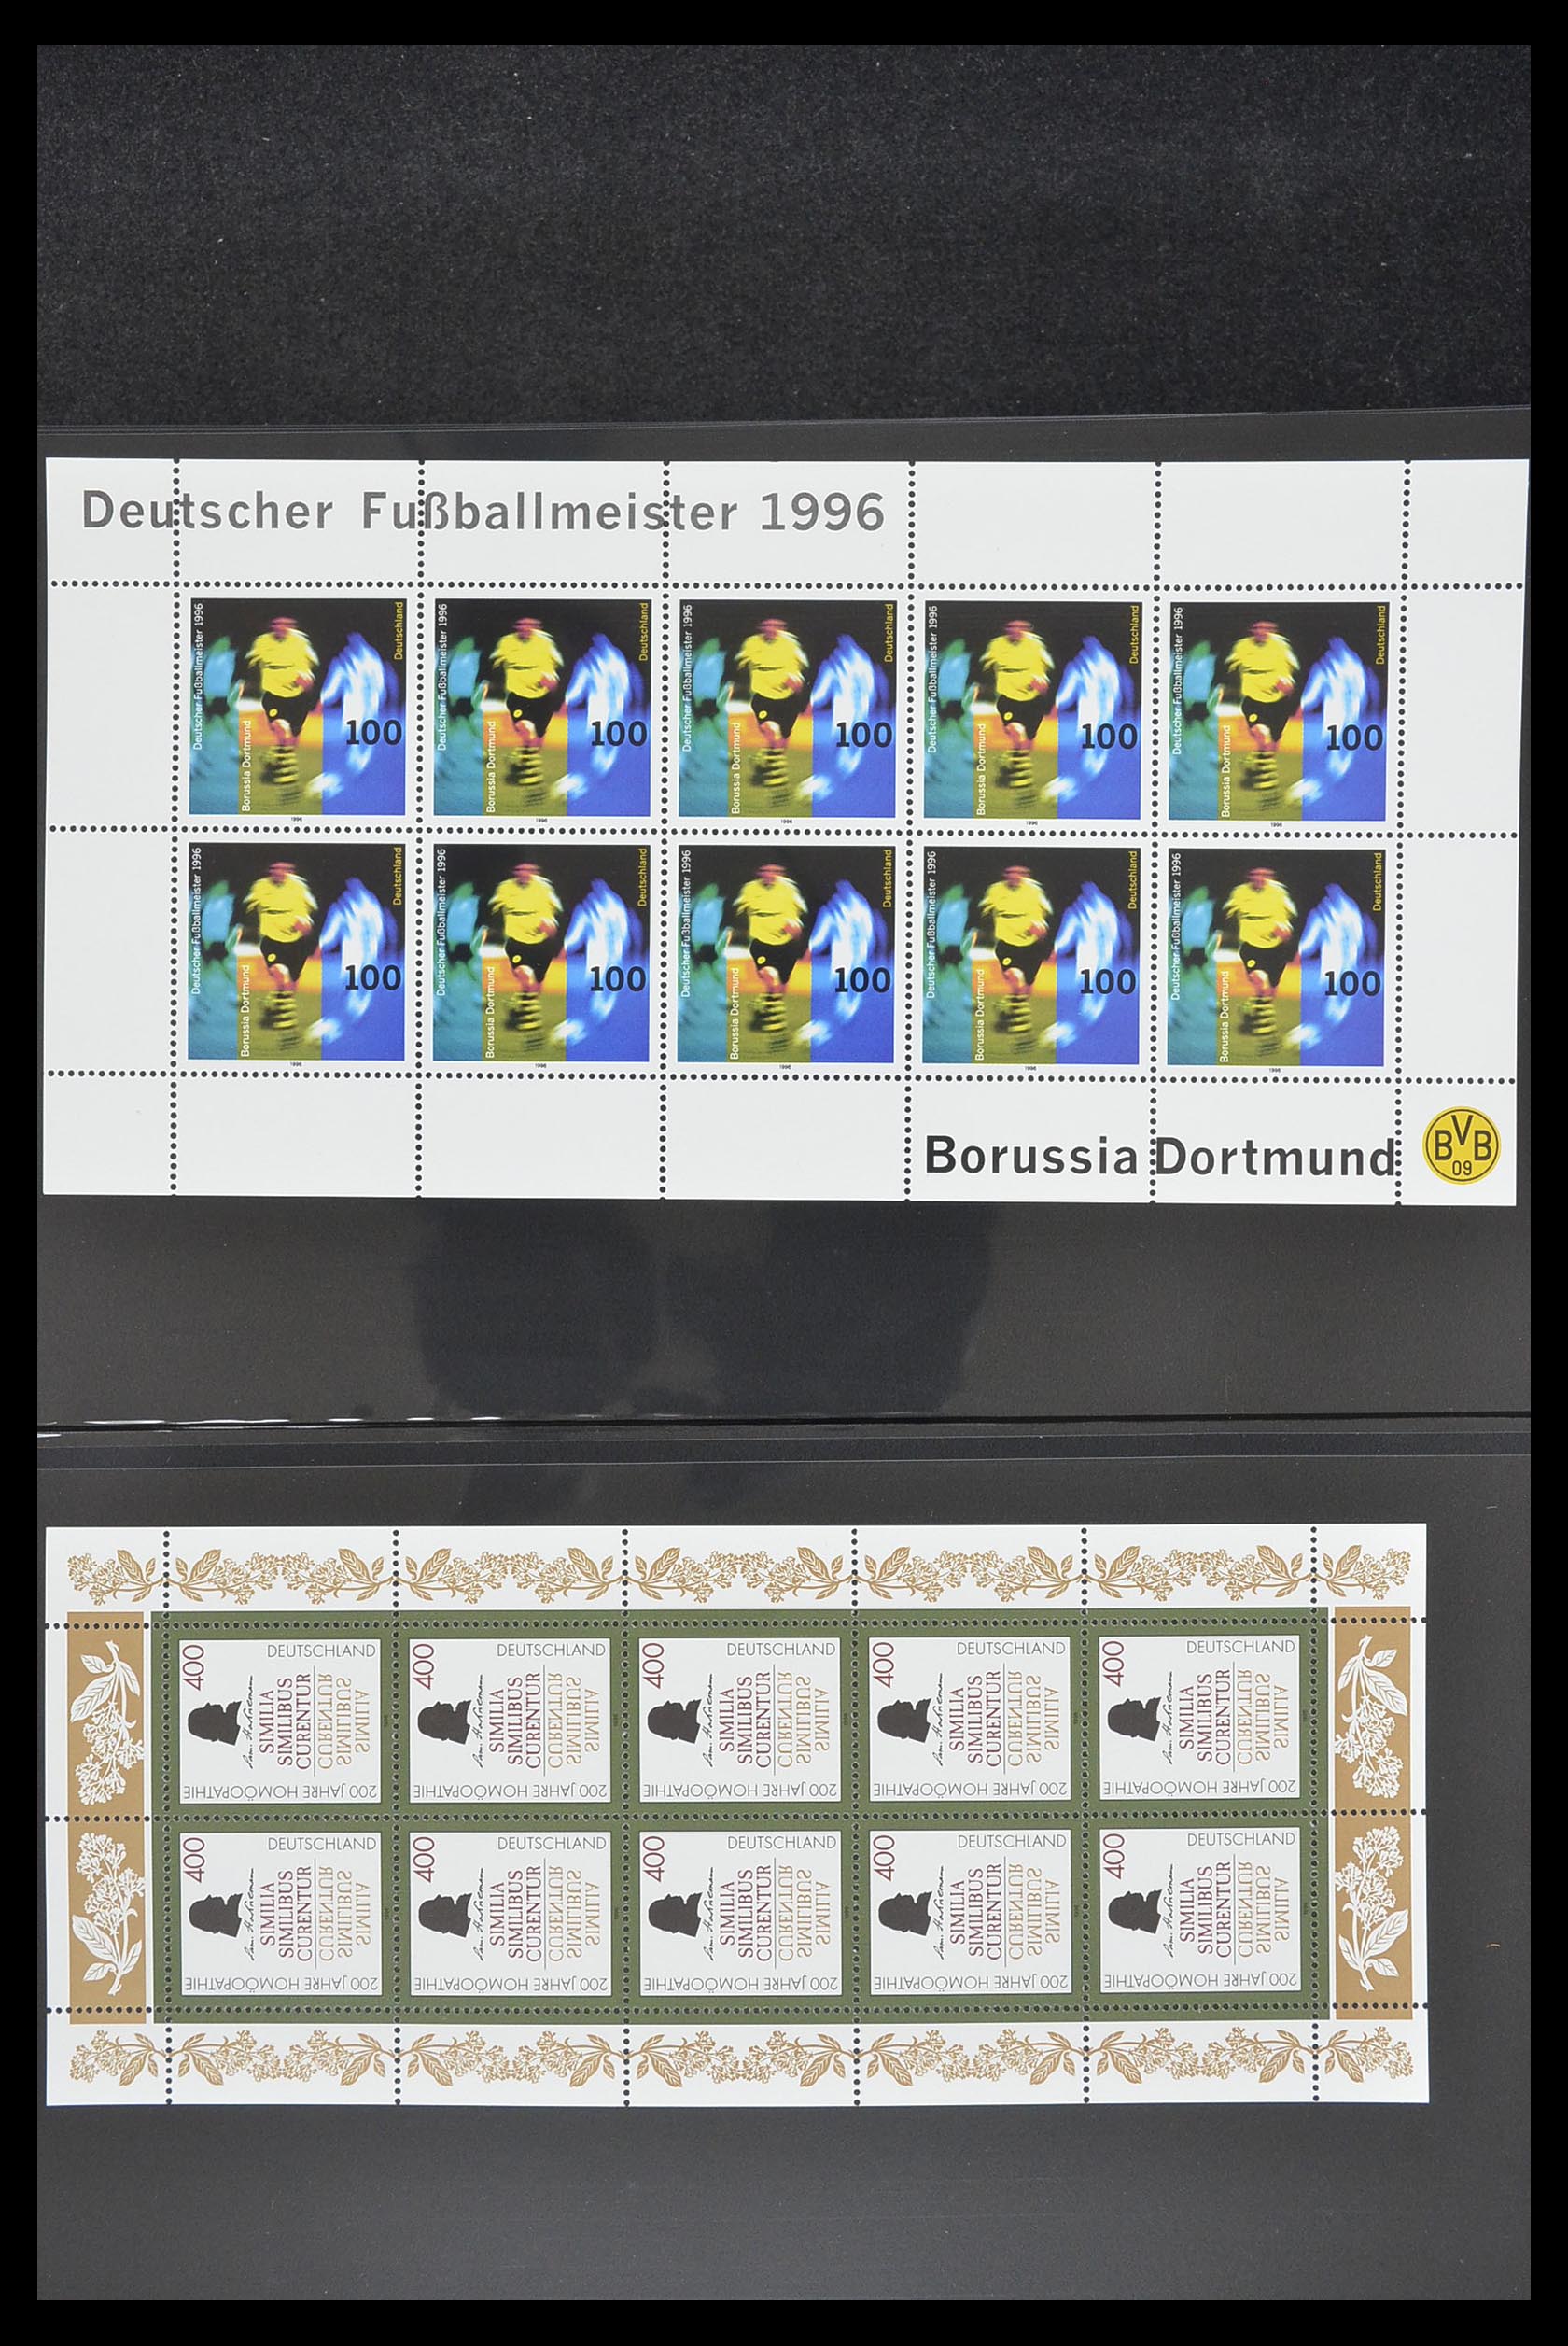 33936 057 - Stamp collection 33936 Bundespost kleinbogen 1994-2000.